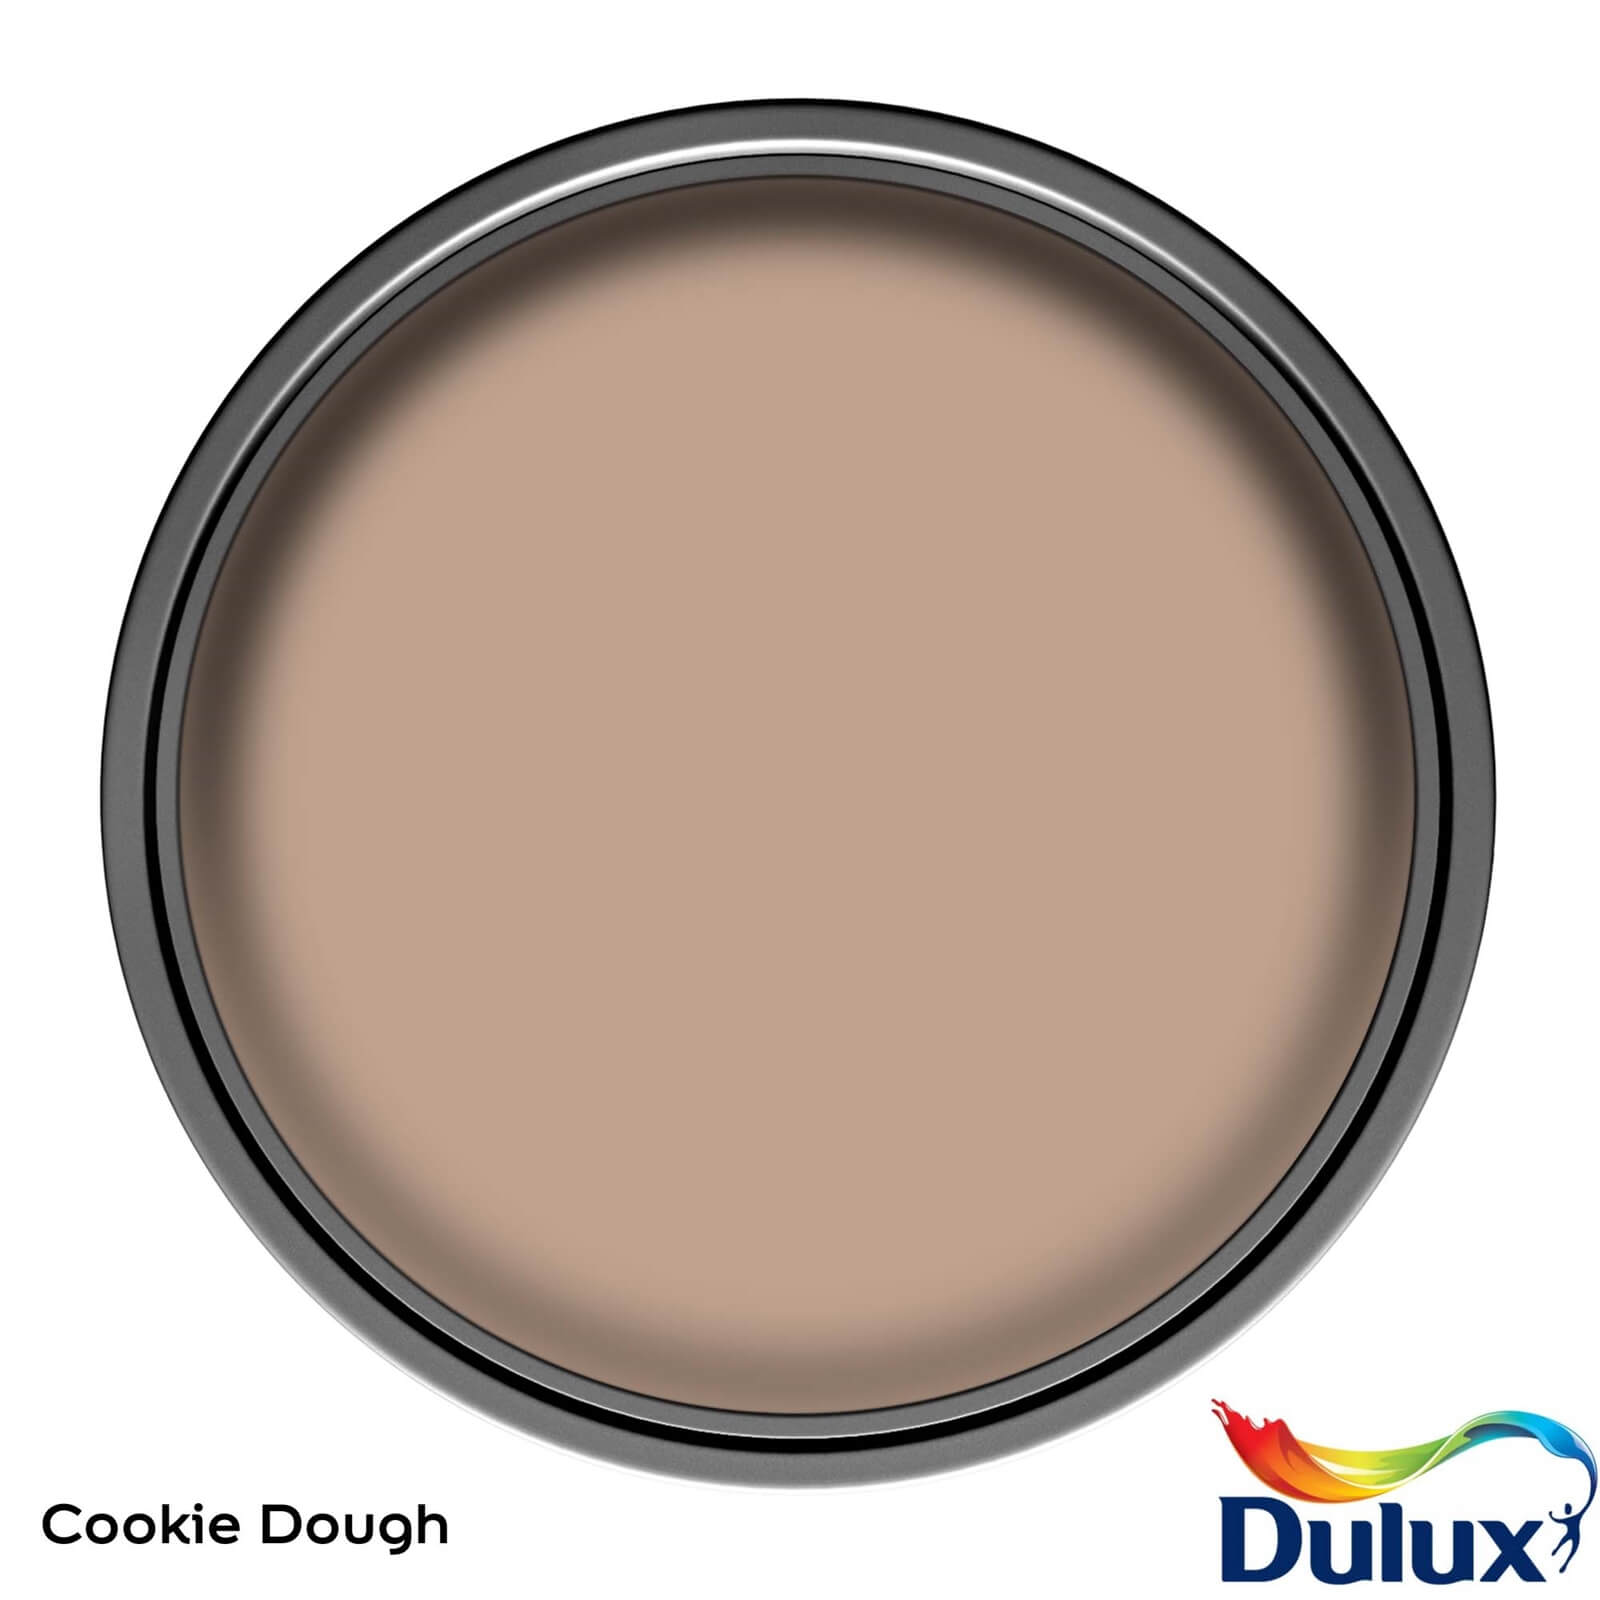 Dulux Once Cookie Dough - Matt Emulsion Paint - 2.5L